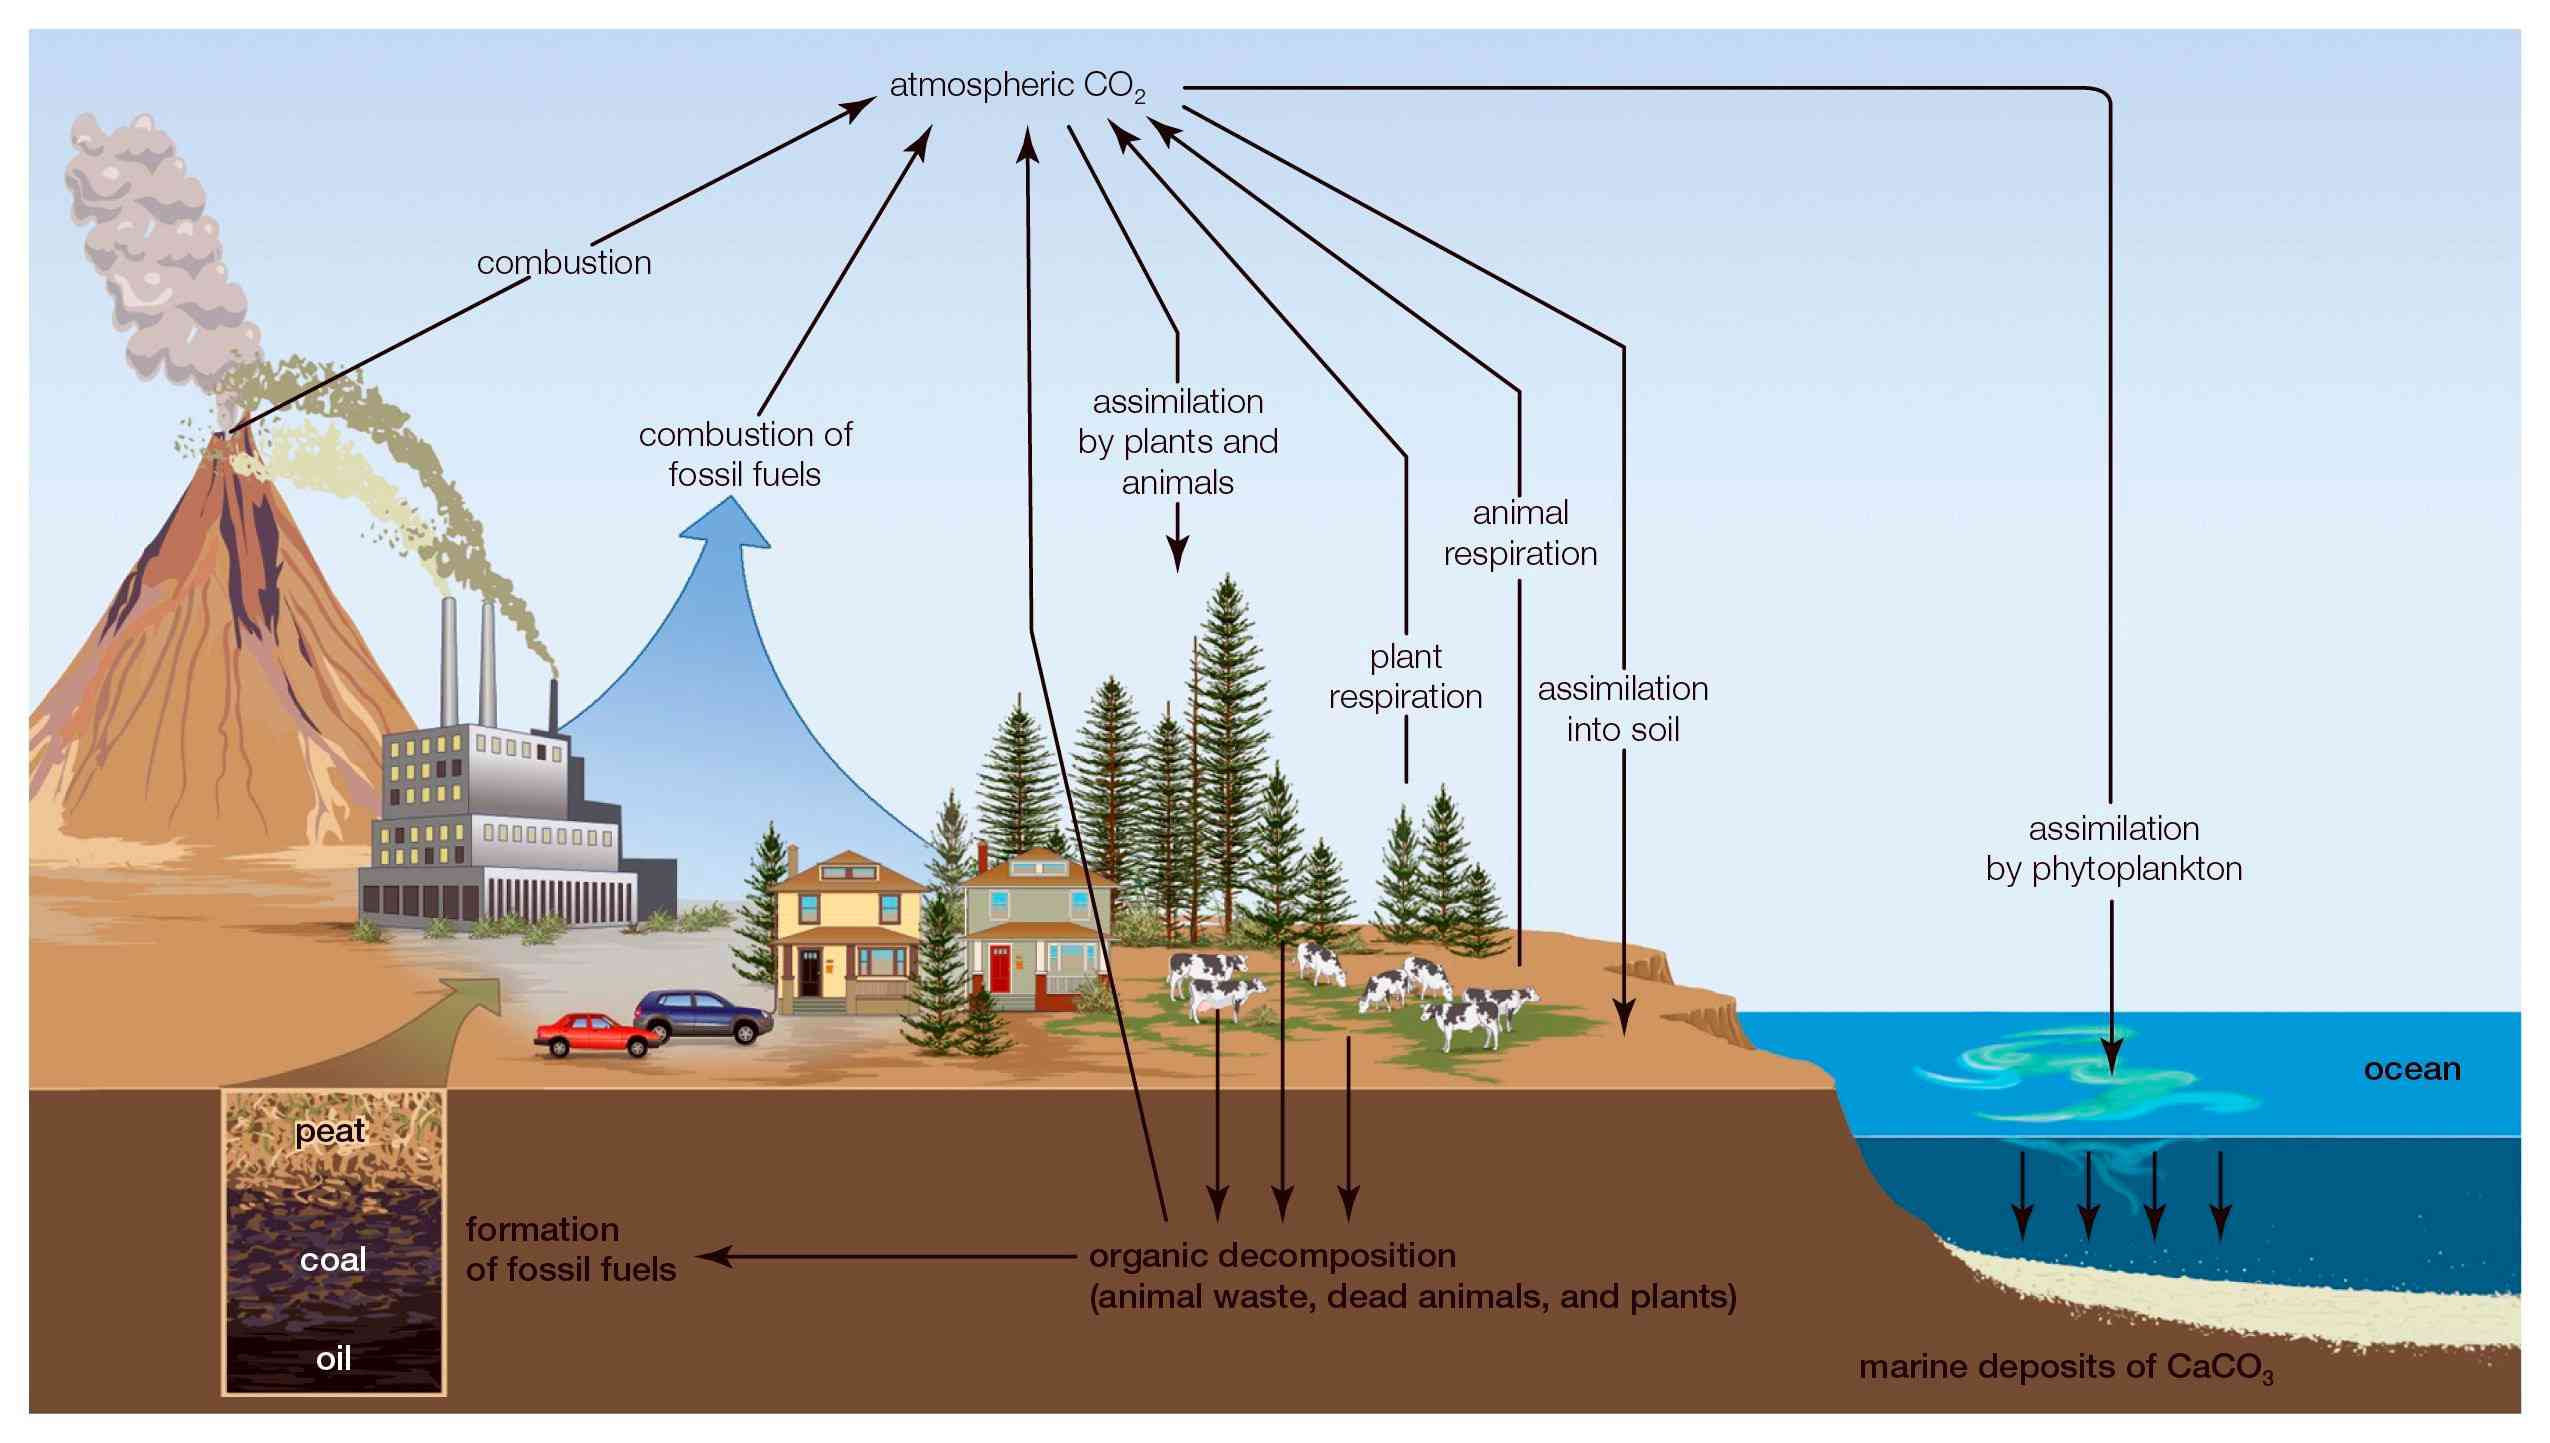 El ciclo del carbono describe el sistema por el que el carbono atmosférico es secuestrado en el suelo, la vida vegetal y el océano